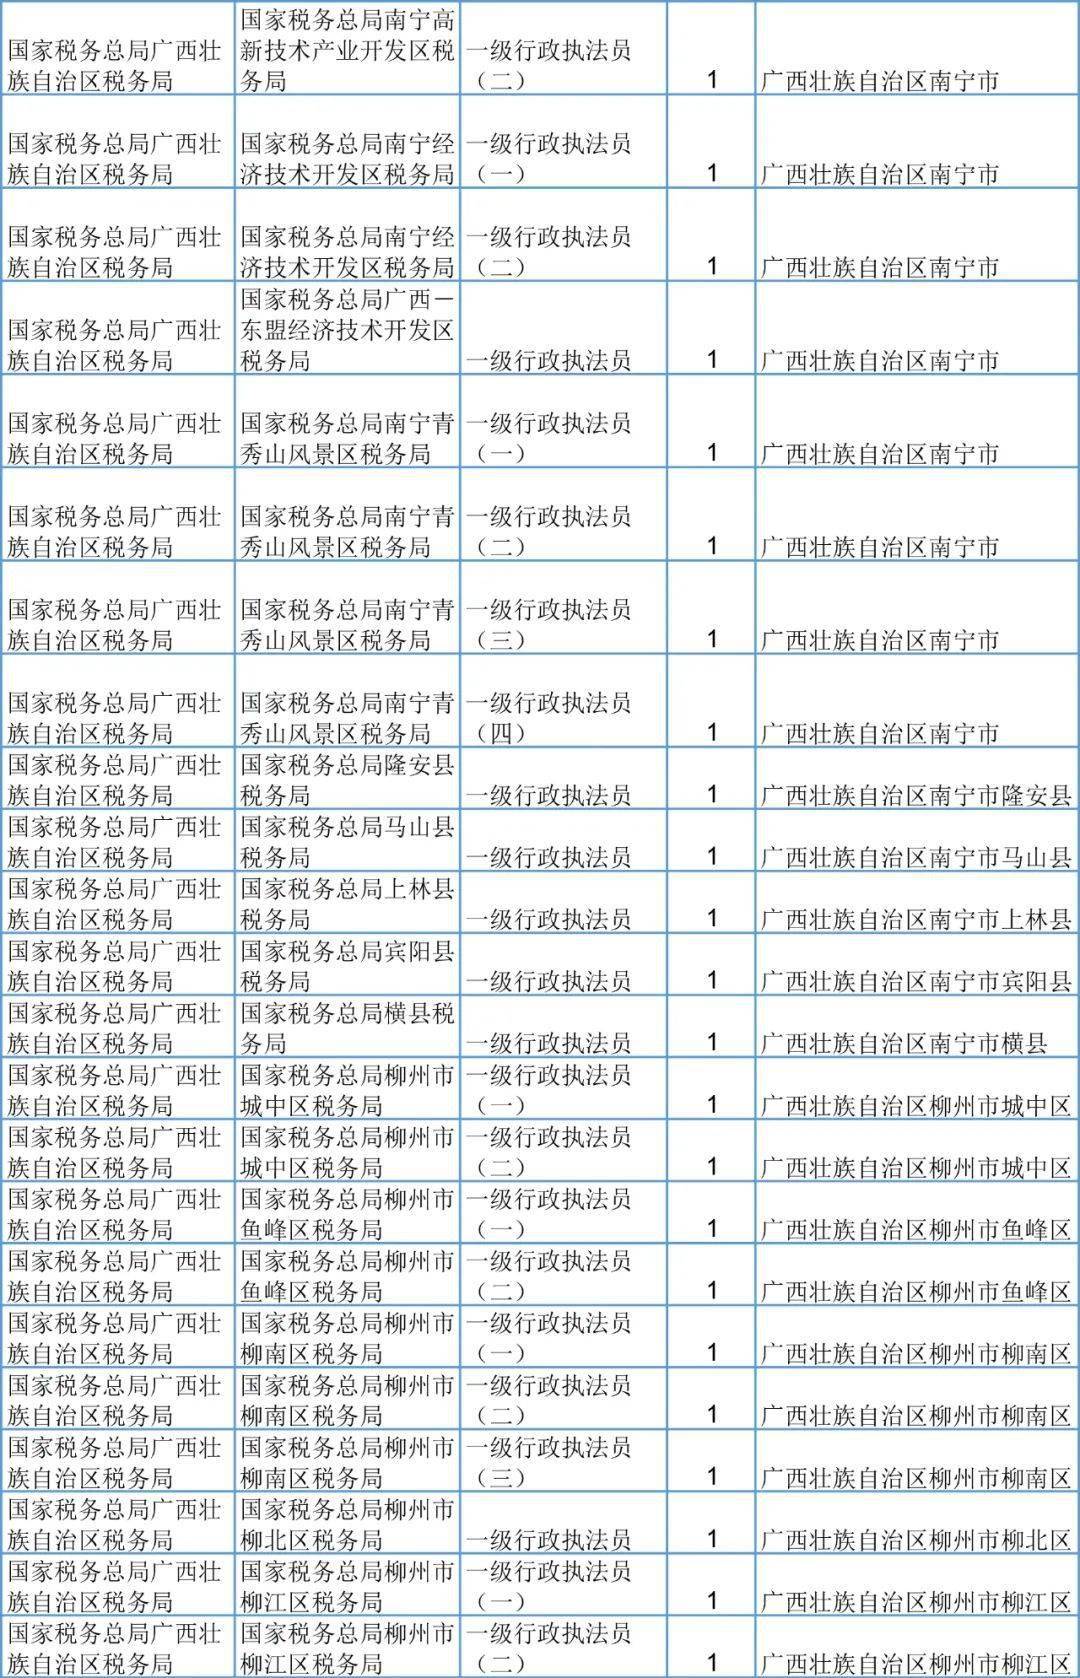 刚刚,桂林2021国家公务员报名开始 附招录表,转给有需要的人